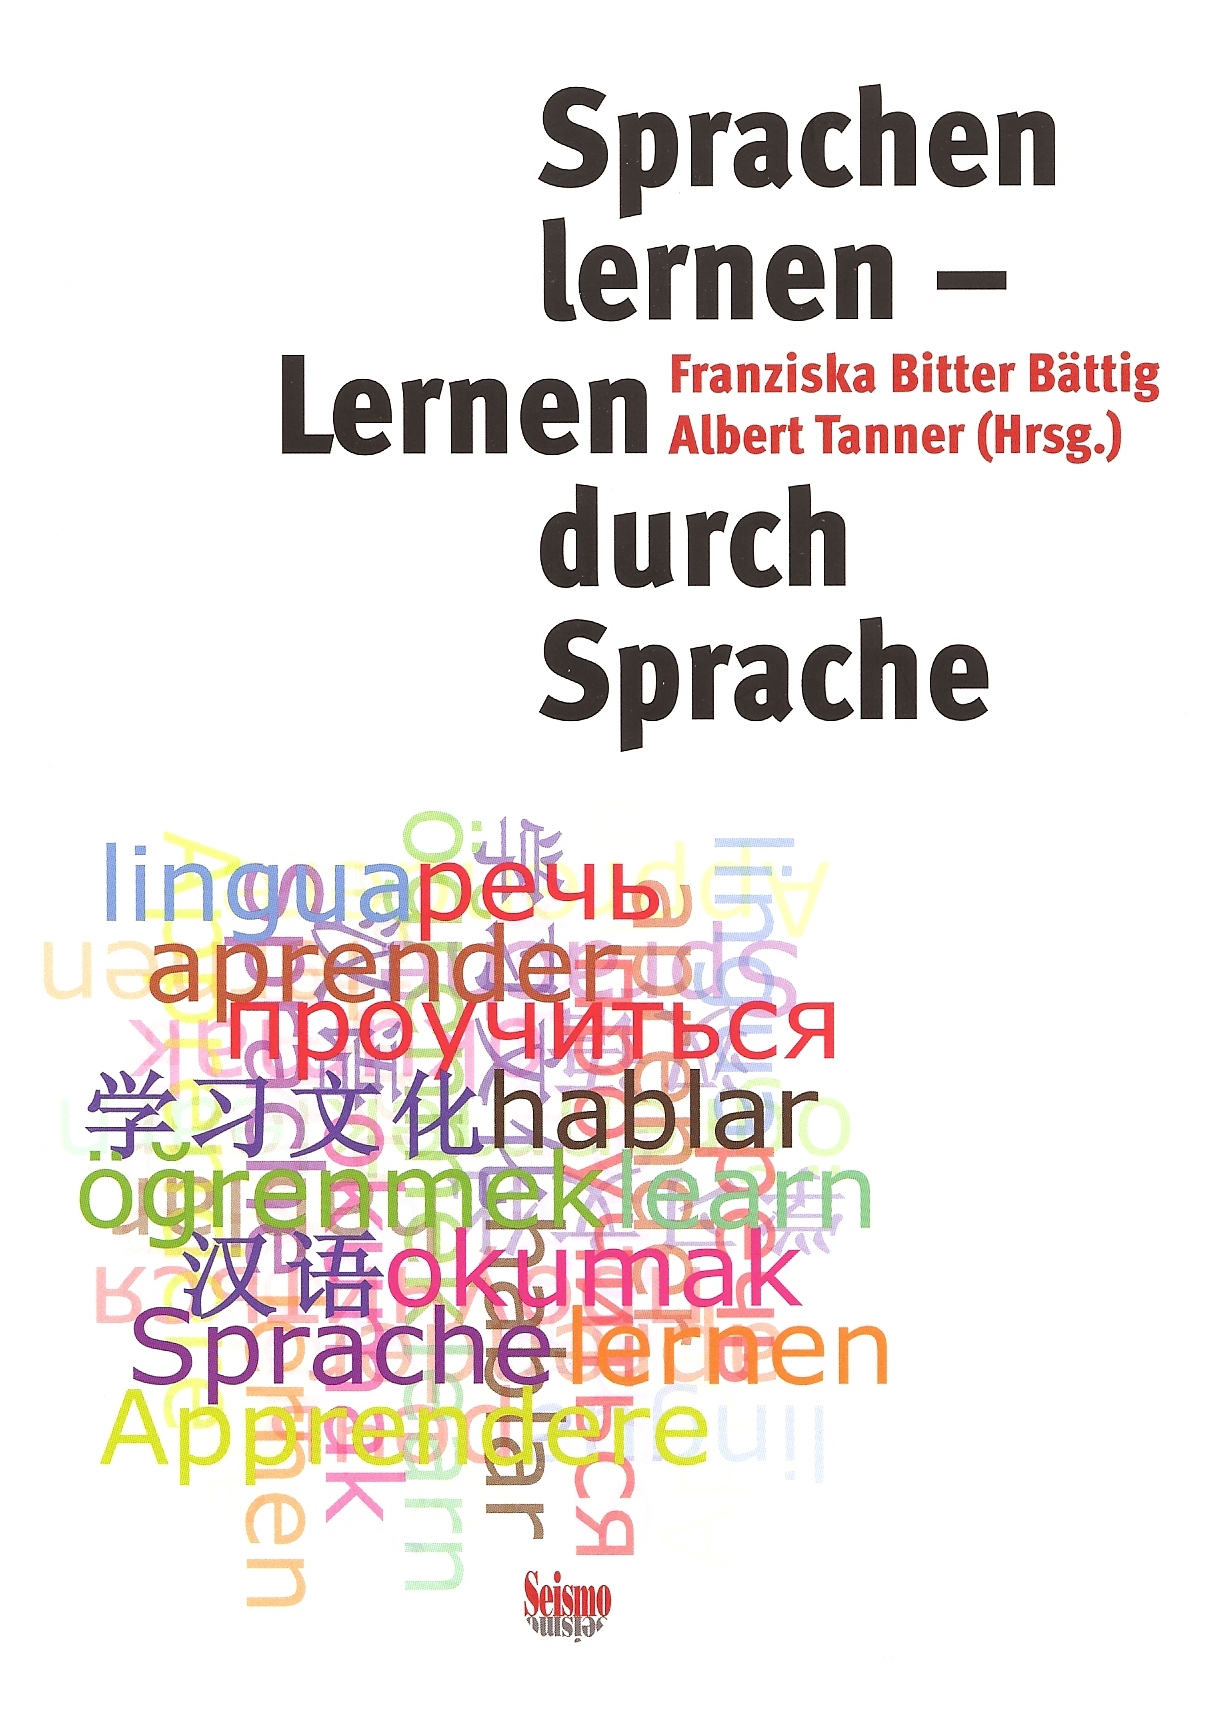 SprachenLernen2010.jpg